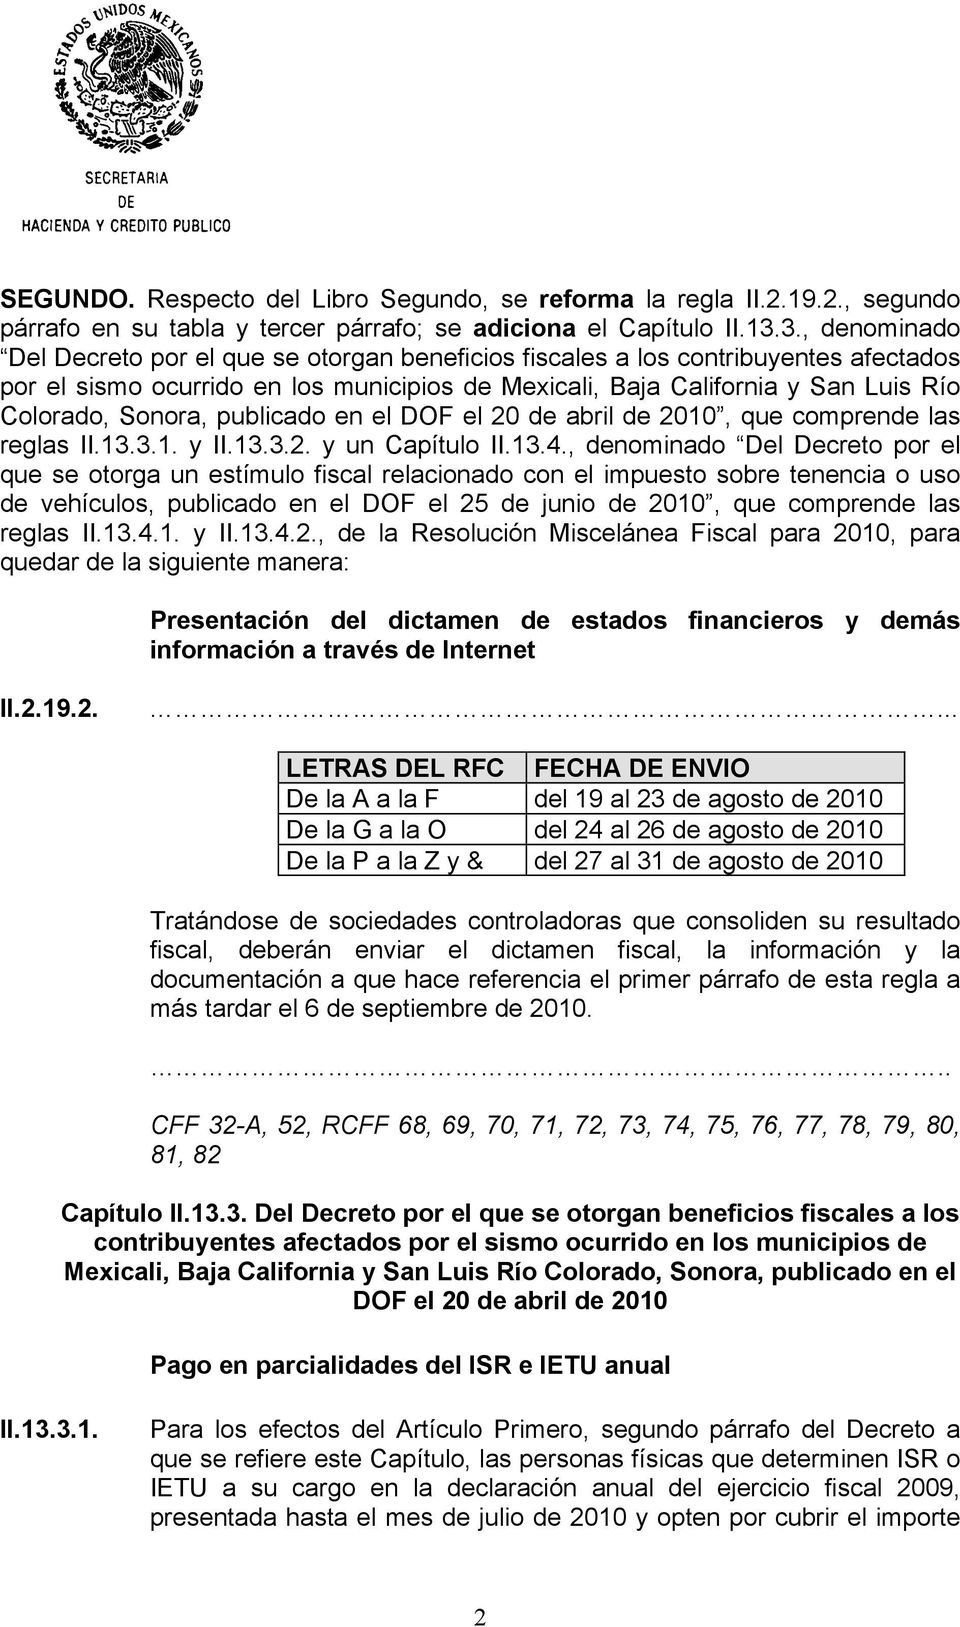 Sonora, publicado en el DOF el 20 de abril de 2010, que comprende las reglas II.13.3.1. y II.13.3.2. y un Capítulo II.13.4.